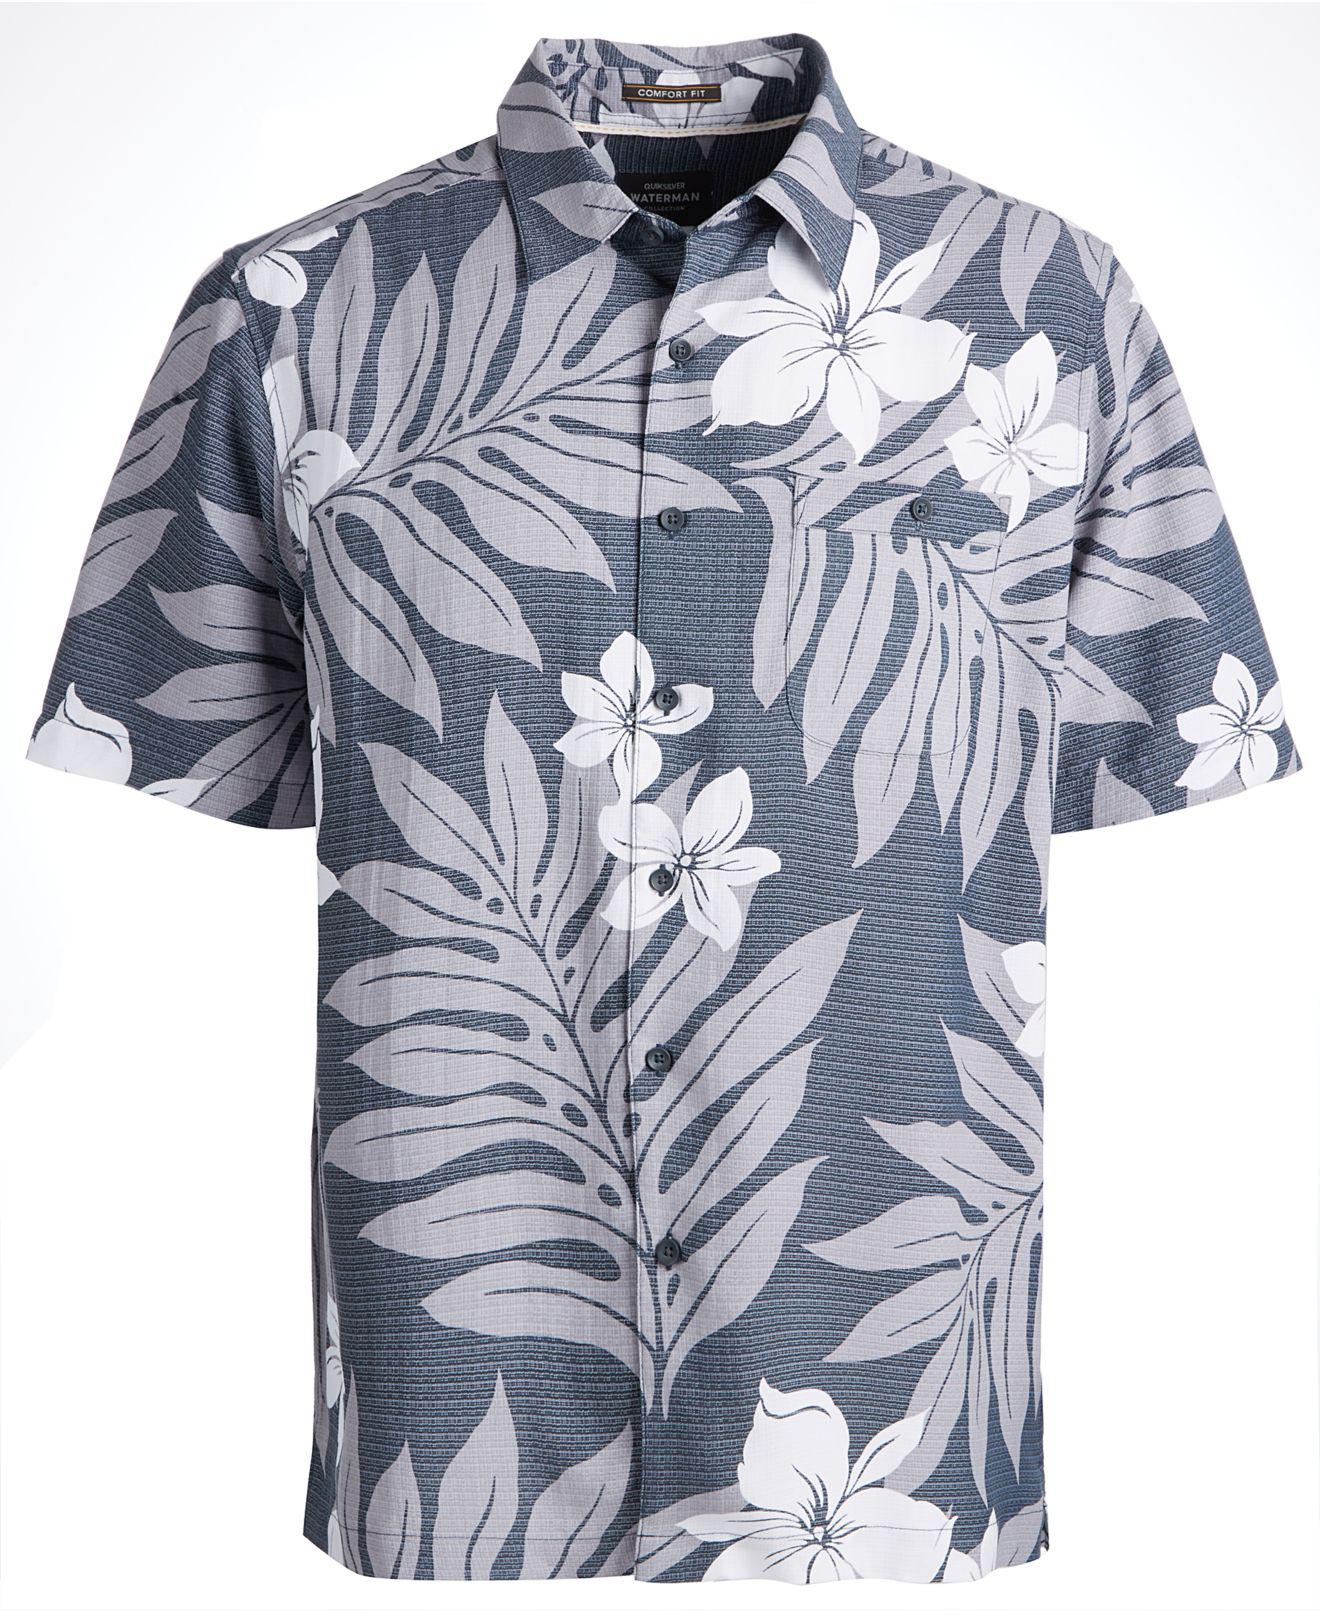 Quiksilver Synthetic Waterman Shonan Hawaiian Shirt in Blue for Men - Lyst